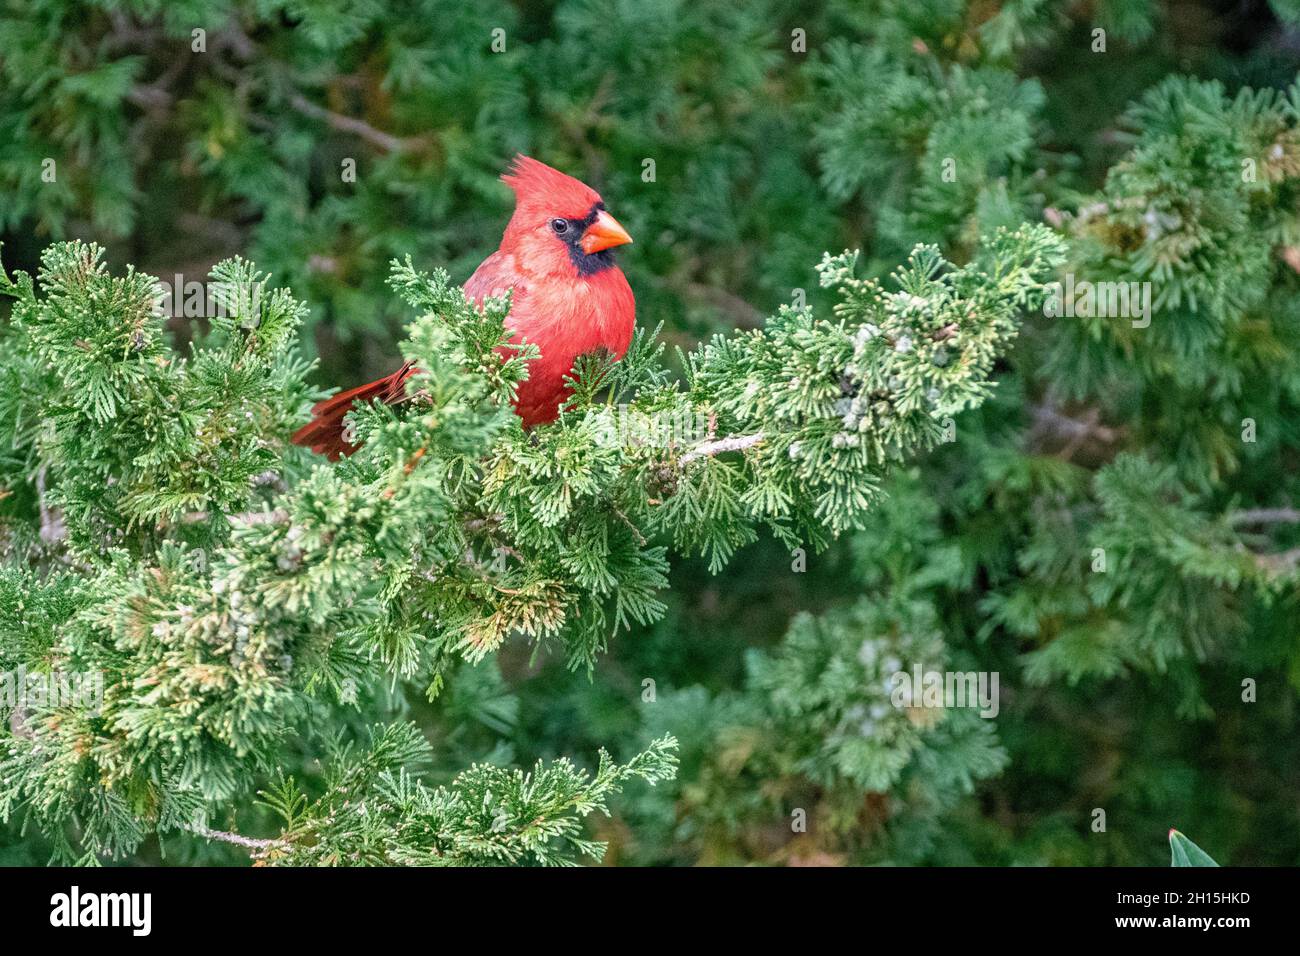 Nördlicher Kardinal - amerikanischer Kardinal - Cardinalis cardinalis in einer Kiefer - roter Vogel / singvögel auf einem Zweig thront Stockfoto